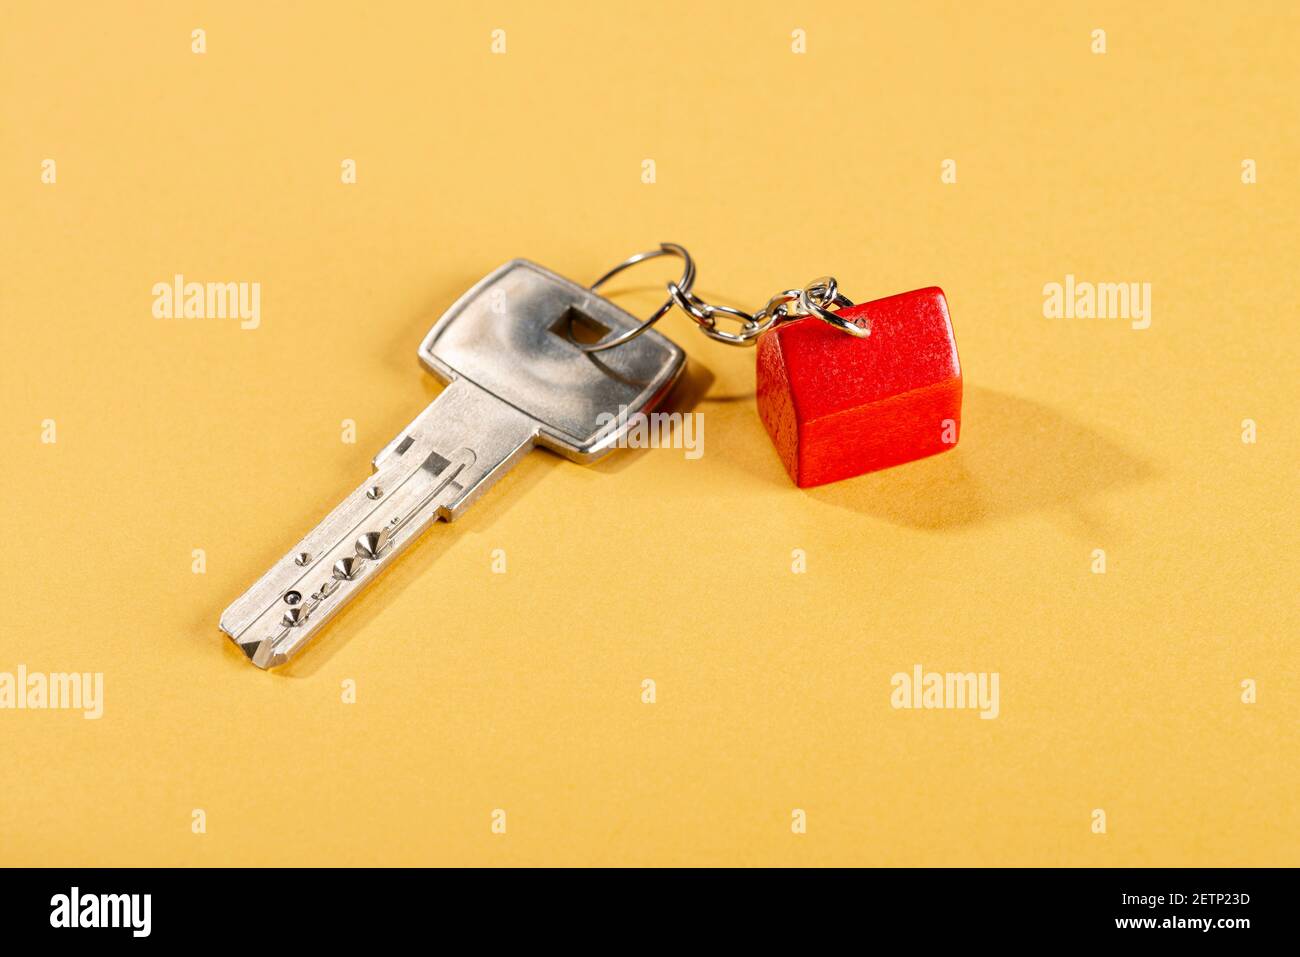 Chiave con una piccola casa rossa come chiave elettronica su sfondo giallo Foto Stock